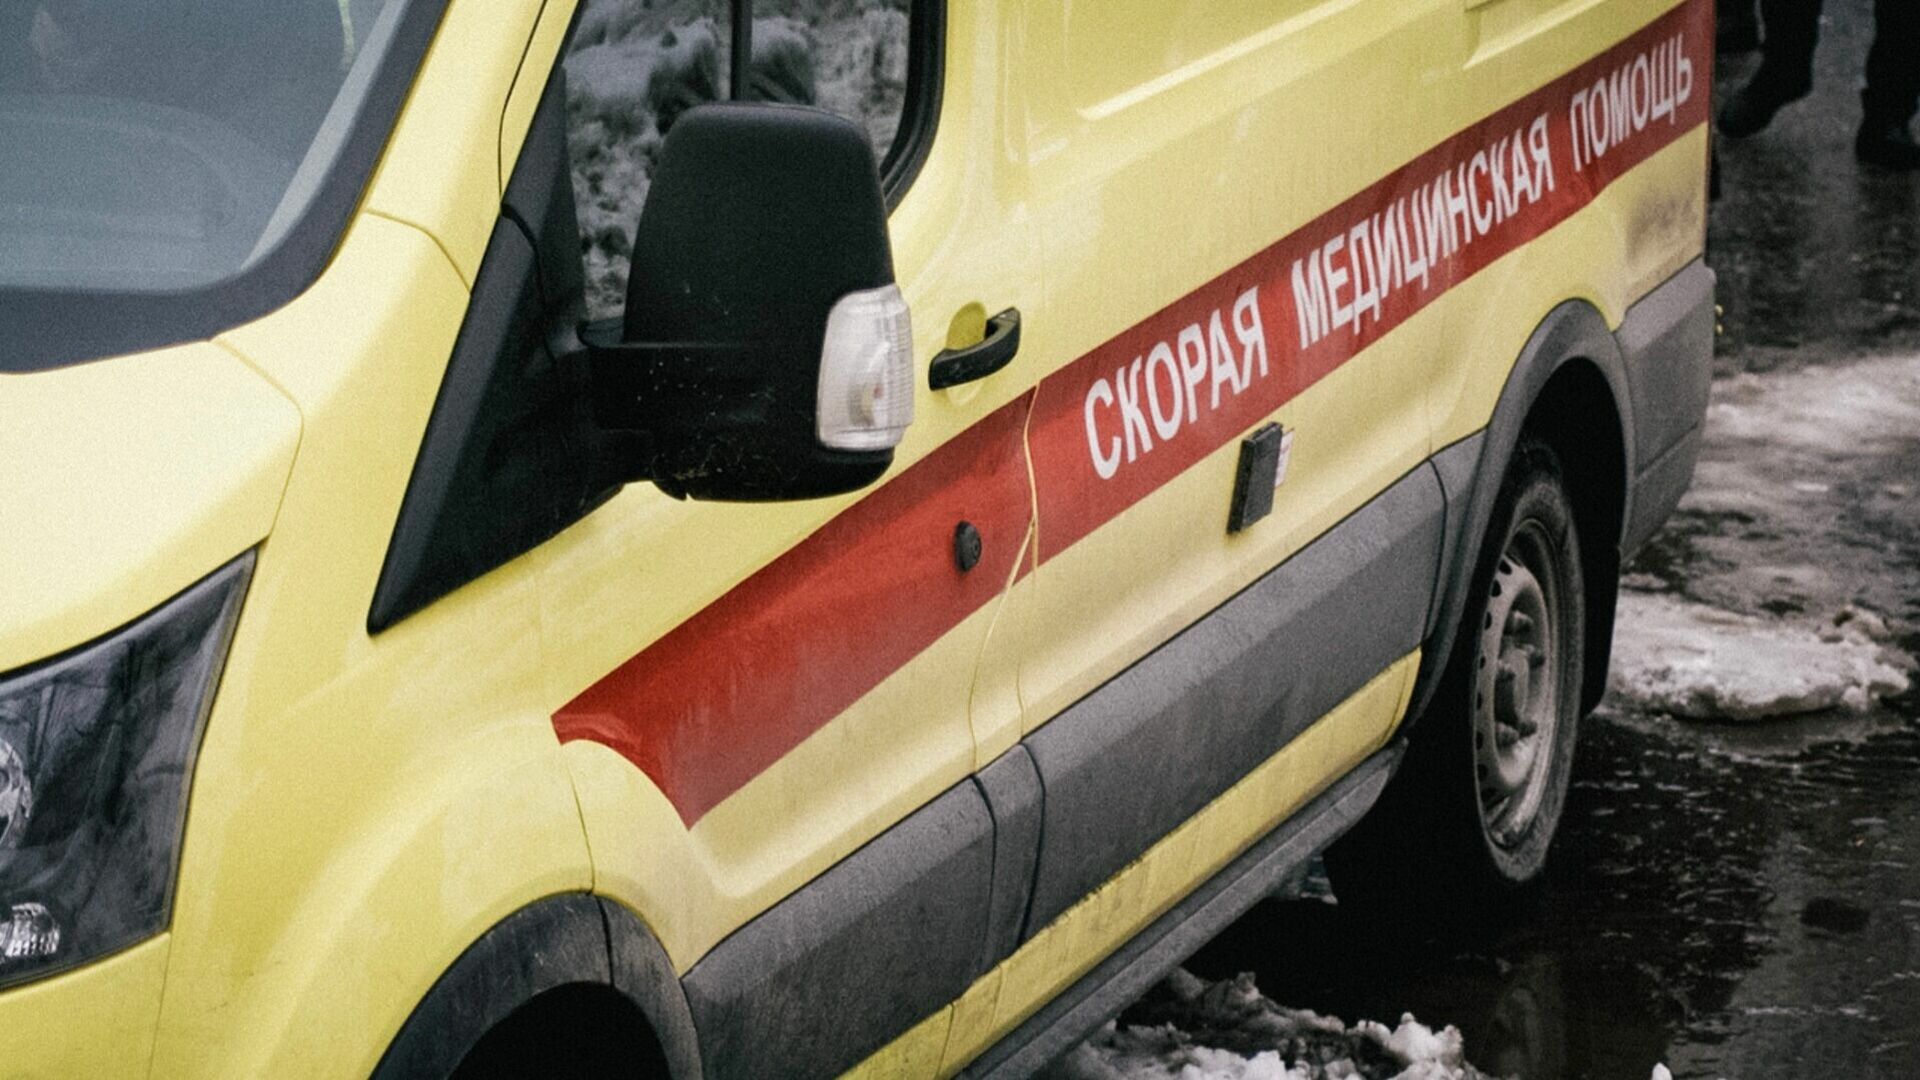 Двоих человек госпитализировали после ДТП в самом центре Челябинска